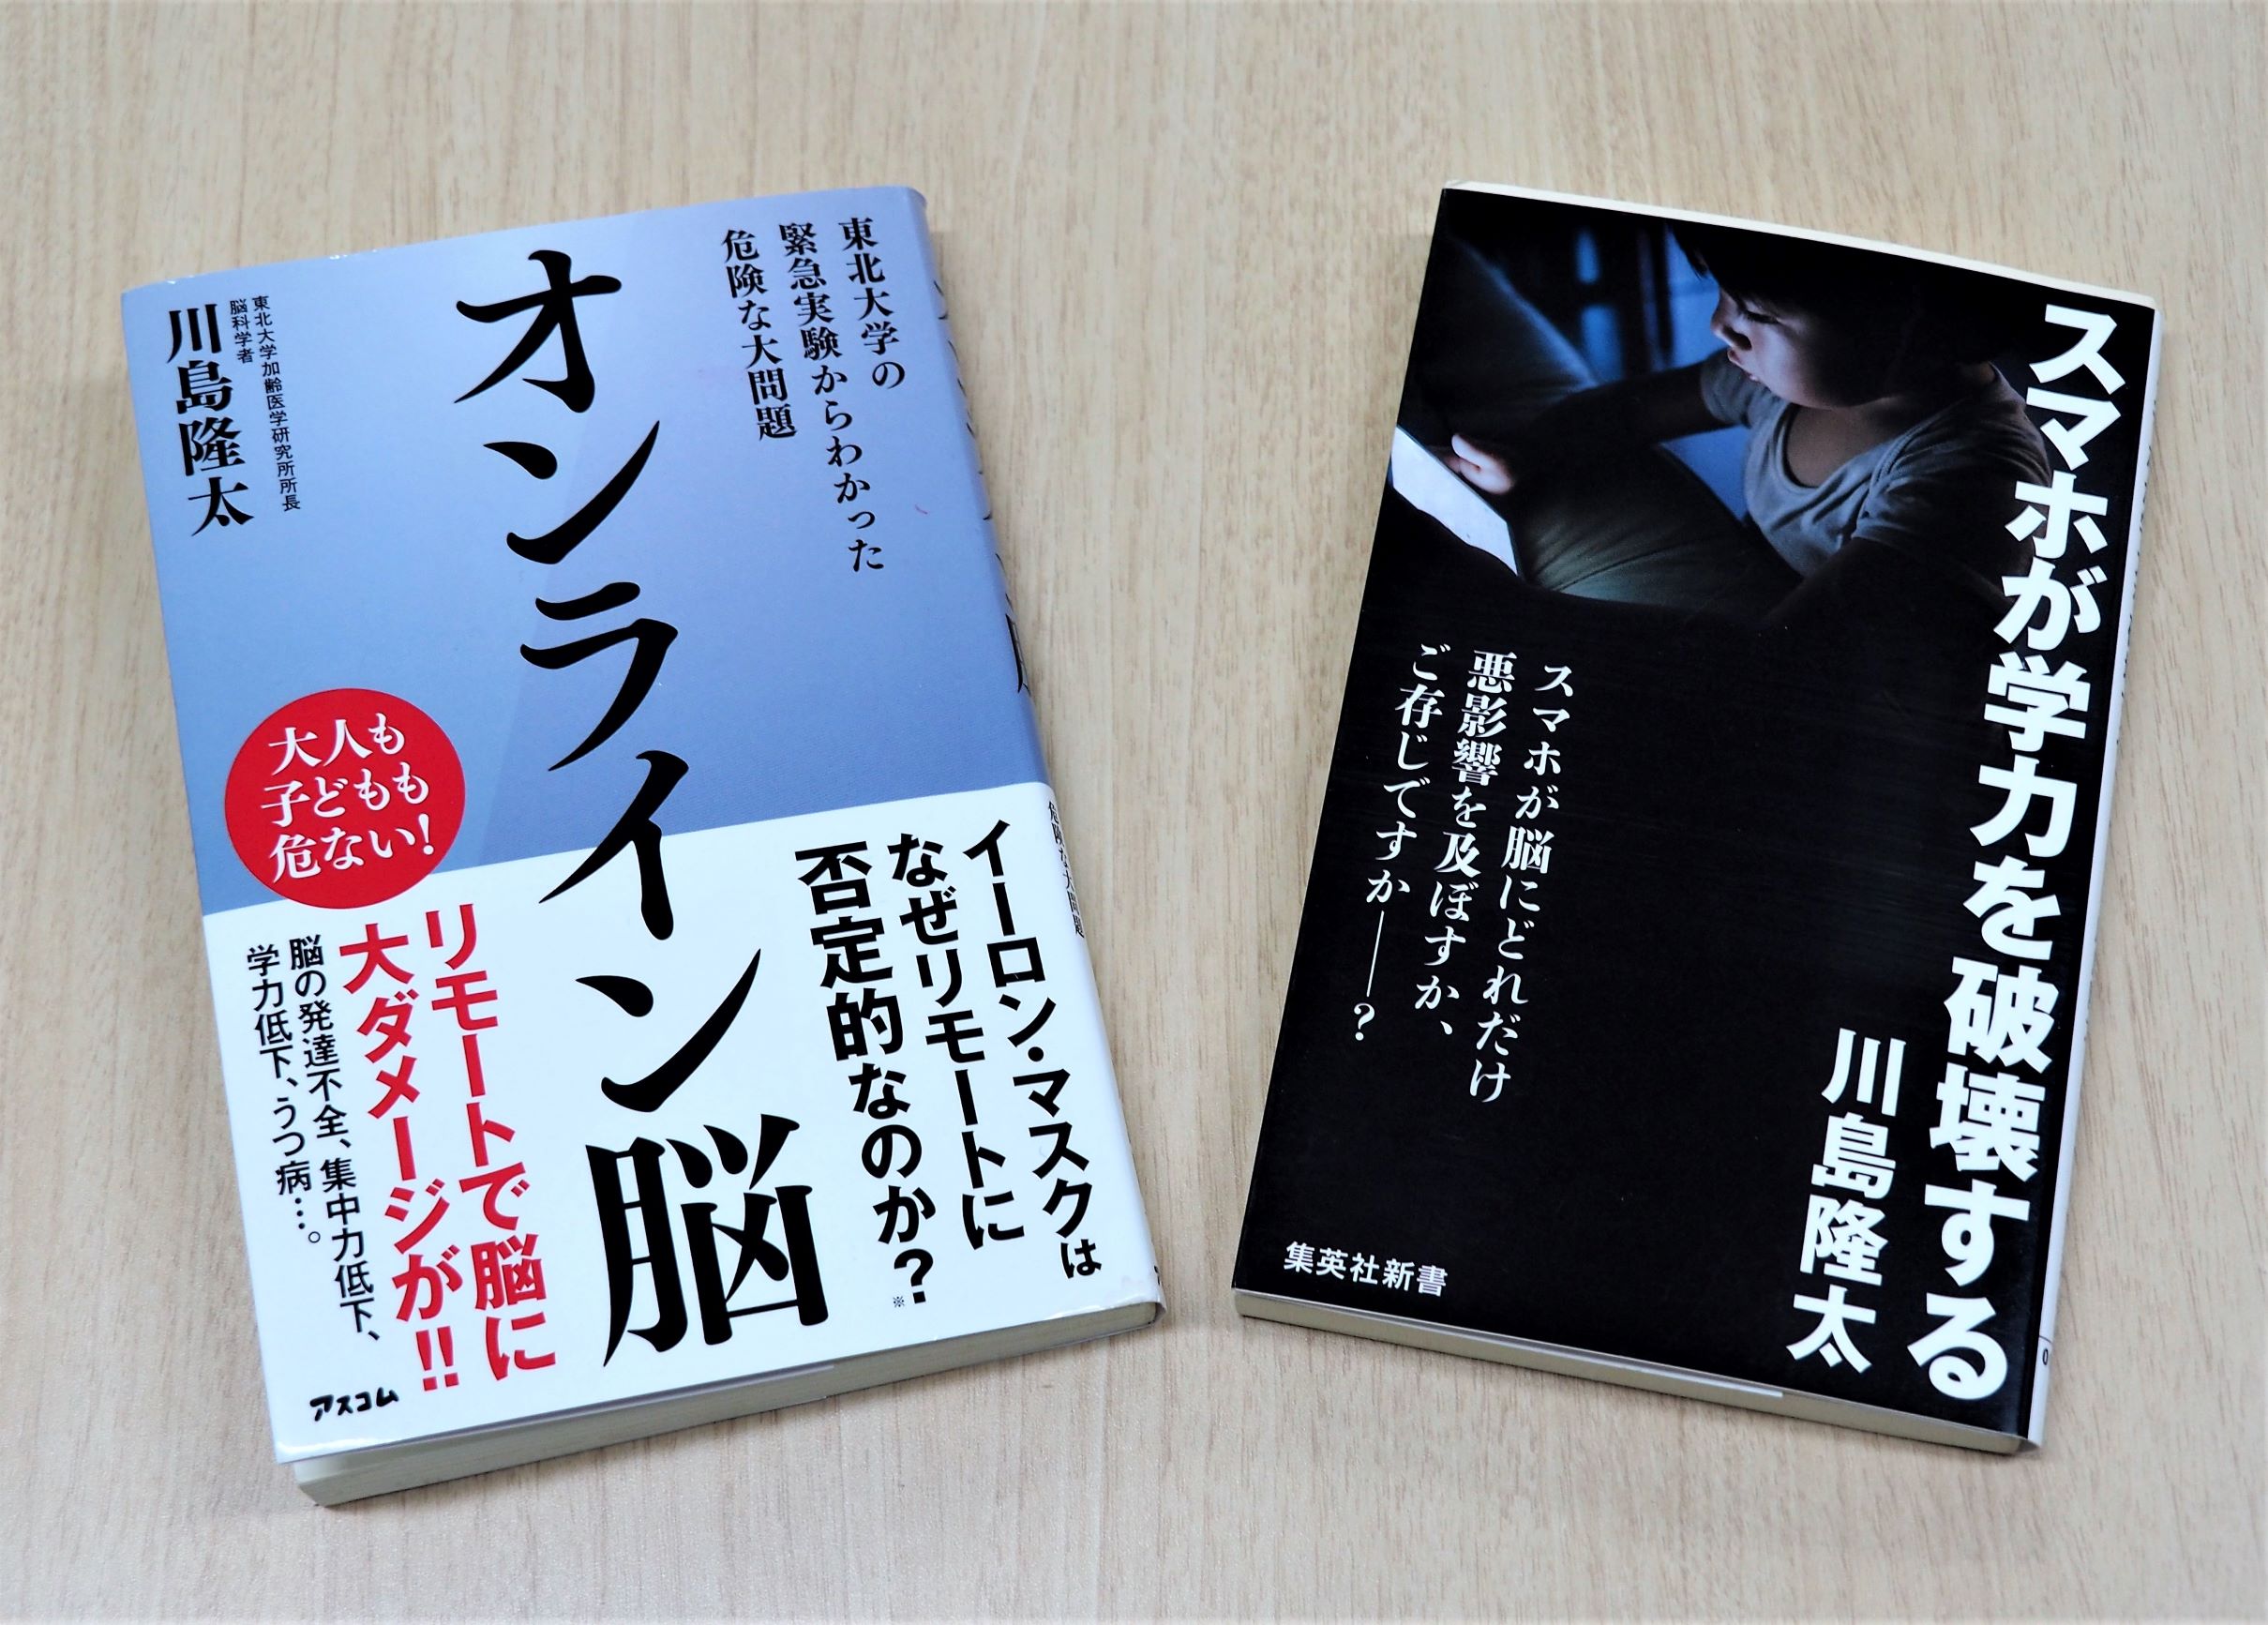 川島教授の著書『オンライン脳 東北大学の緊急実験からわかった危険な大問題 』（アスコム）と『スマホが学力を破壊する』（集英社新書）